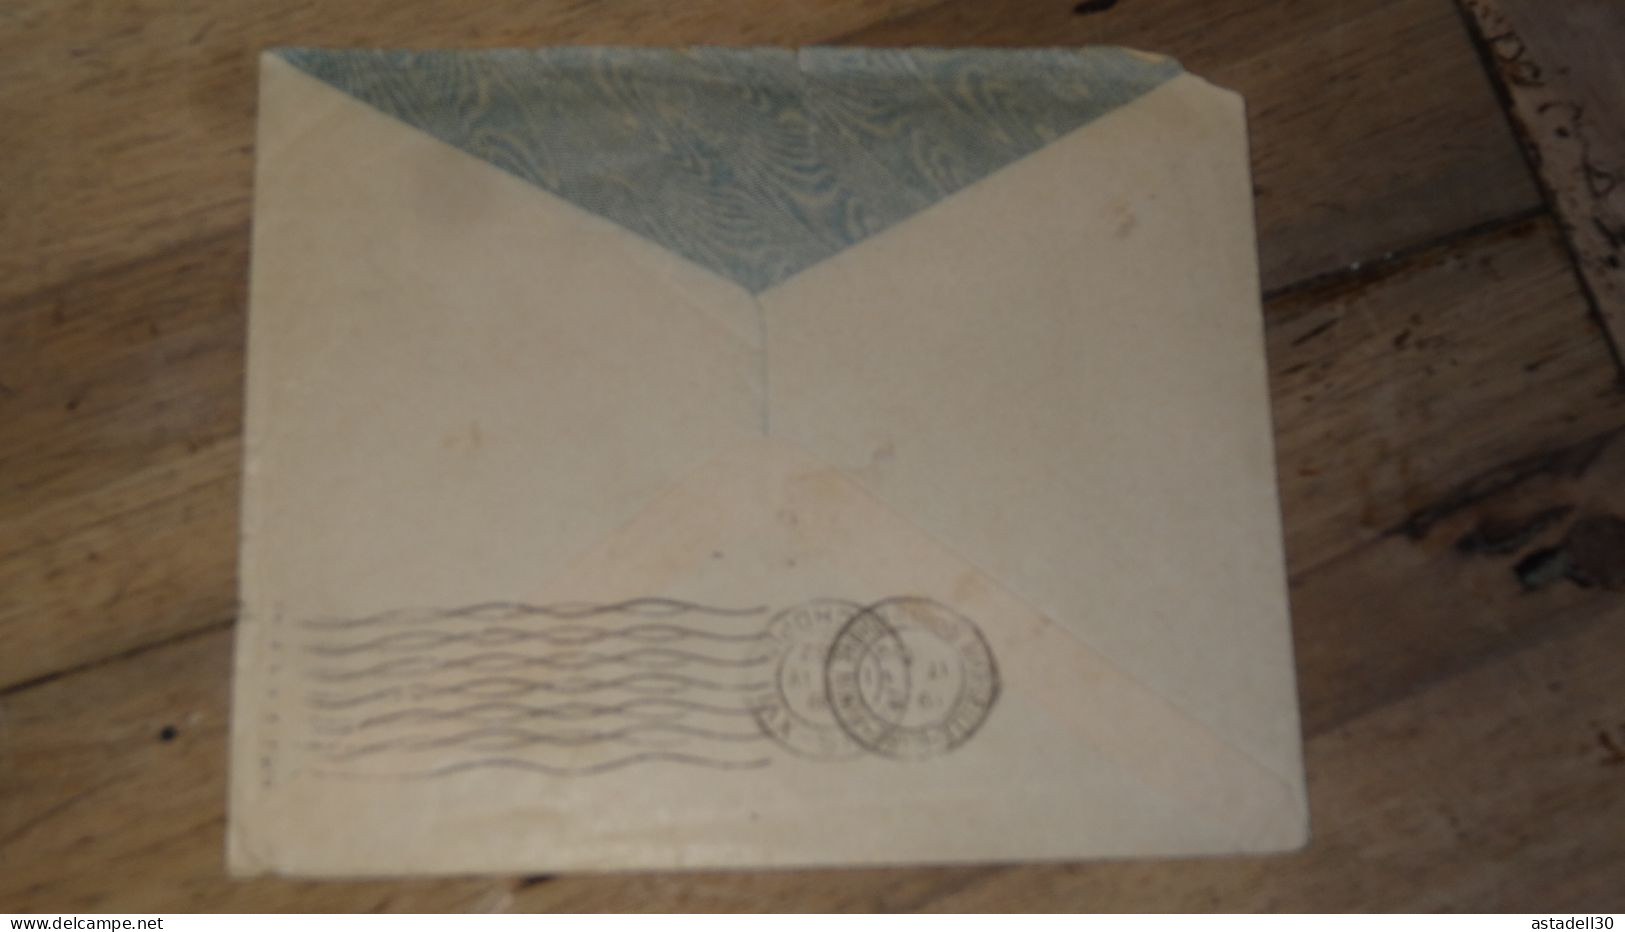 Enveloppe Indochine, Avion, 1932   ......... Boite1 ...... 240424-62 - Brieven En Documenten